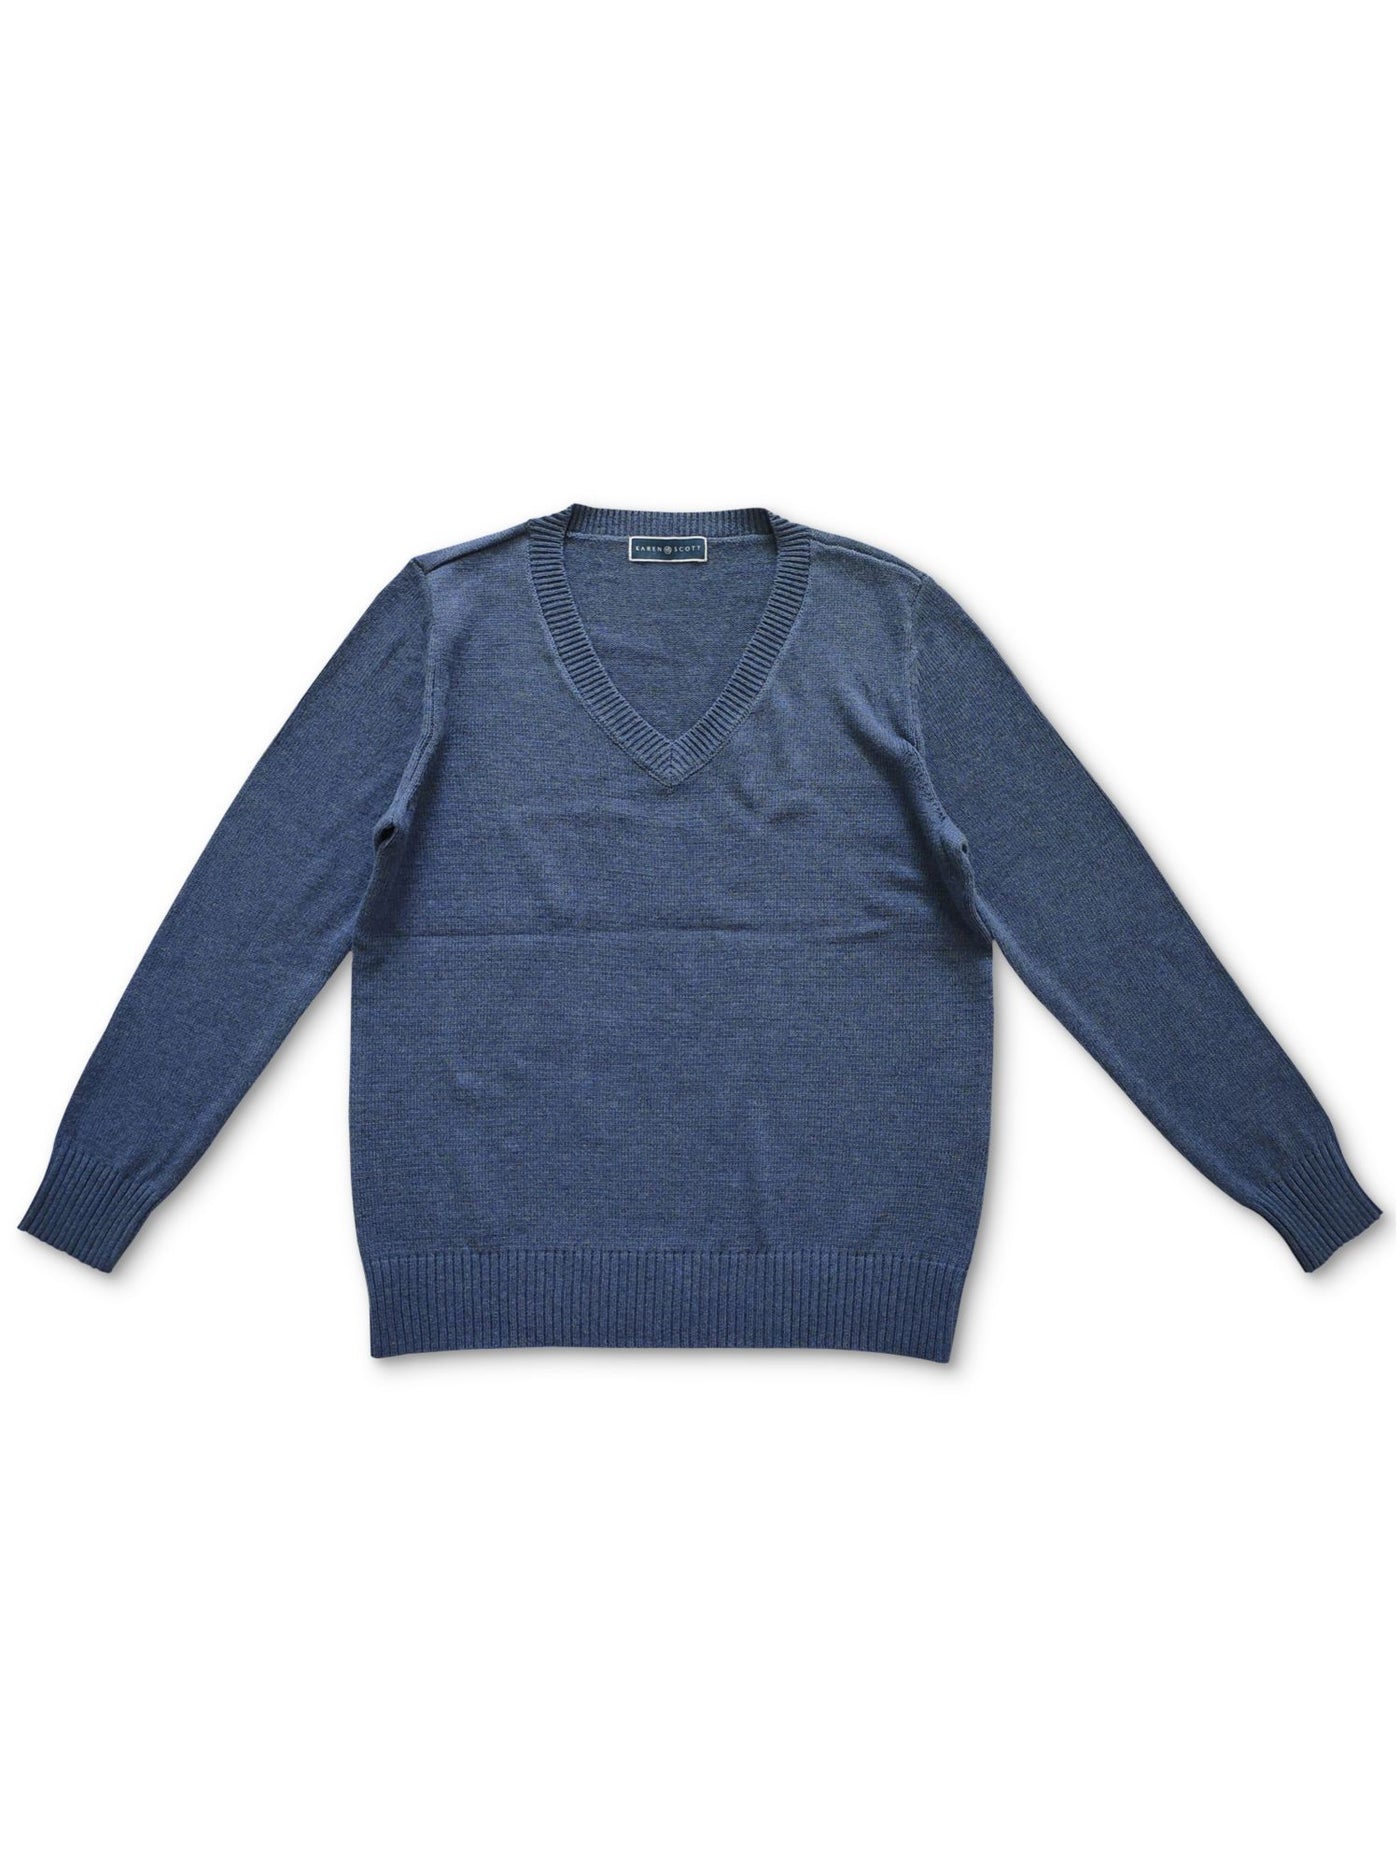 KAREN SCOTT Womens Blue Ribbed Relaxed Fit Long Sleeve V Neck Sweater M